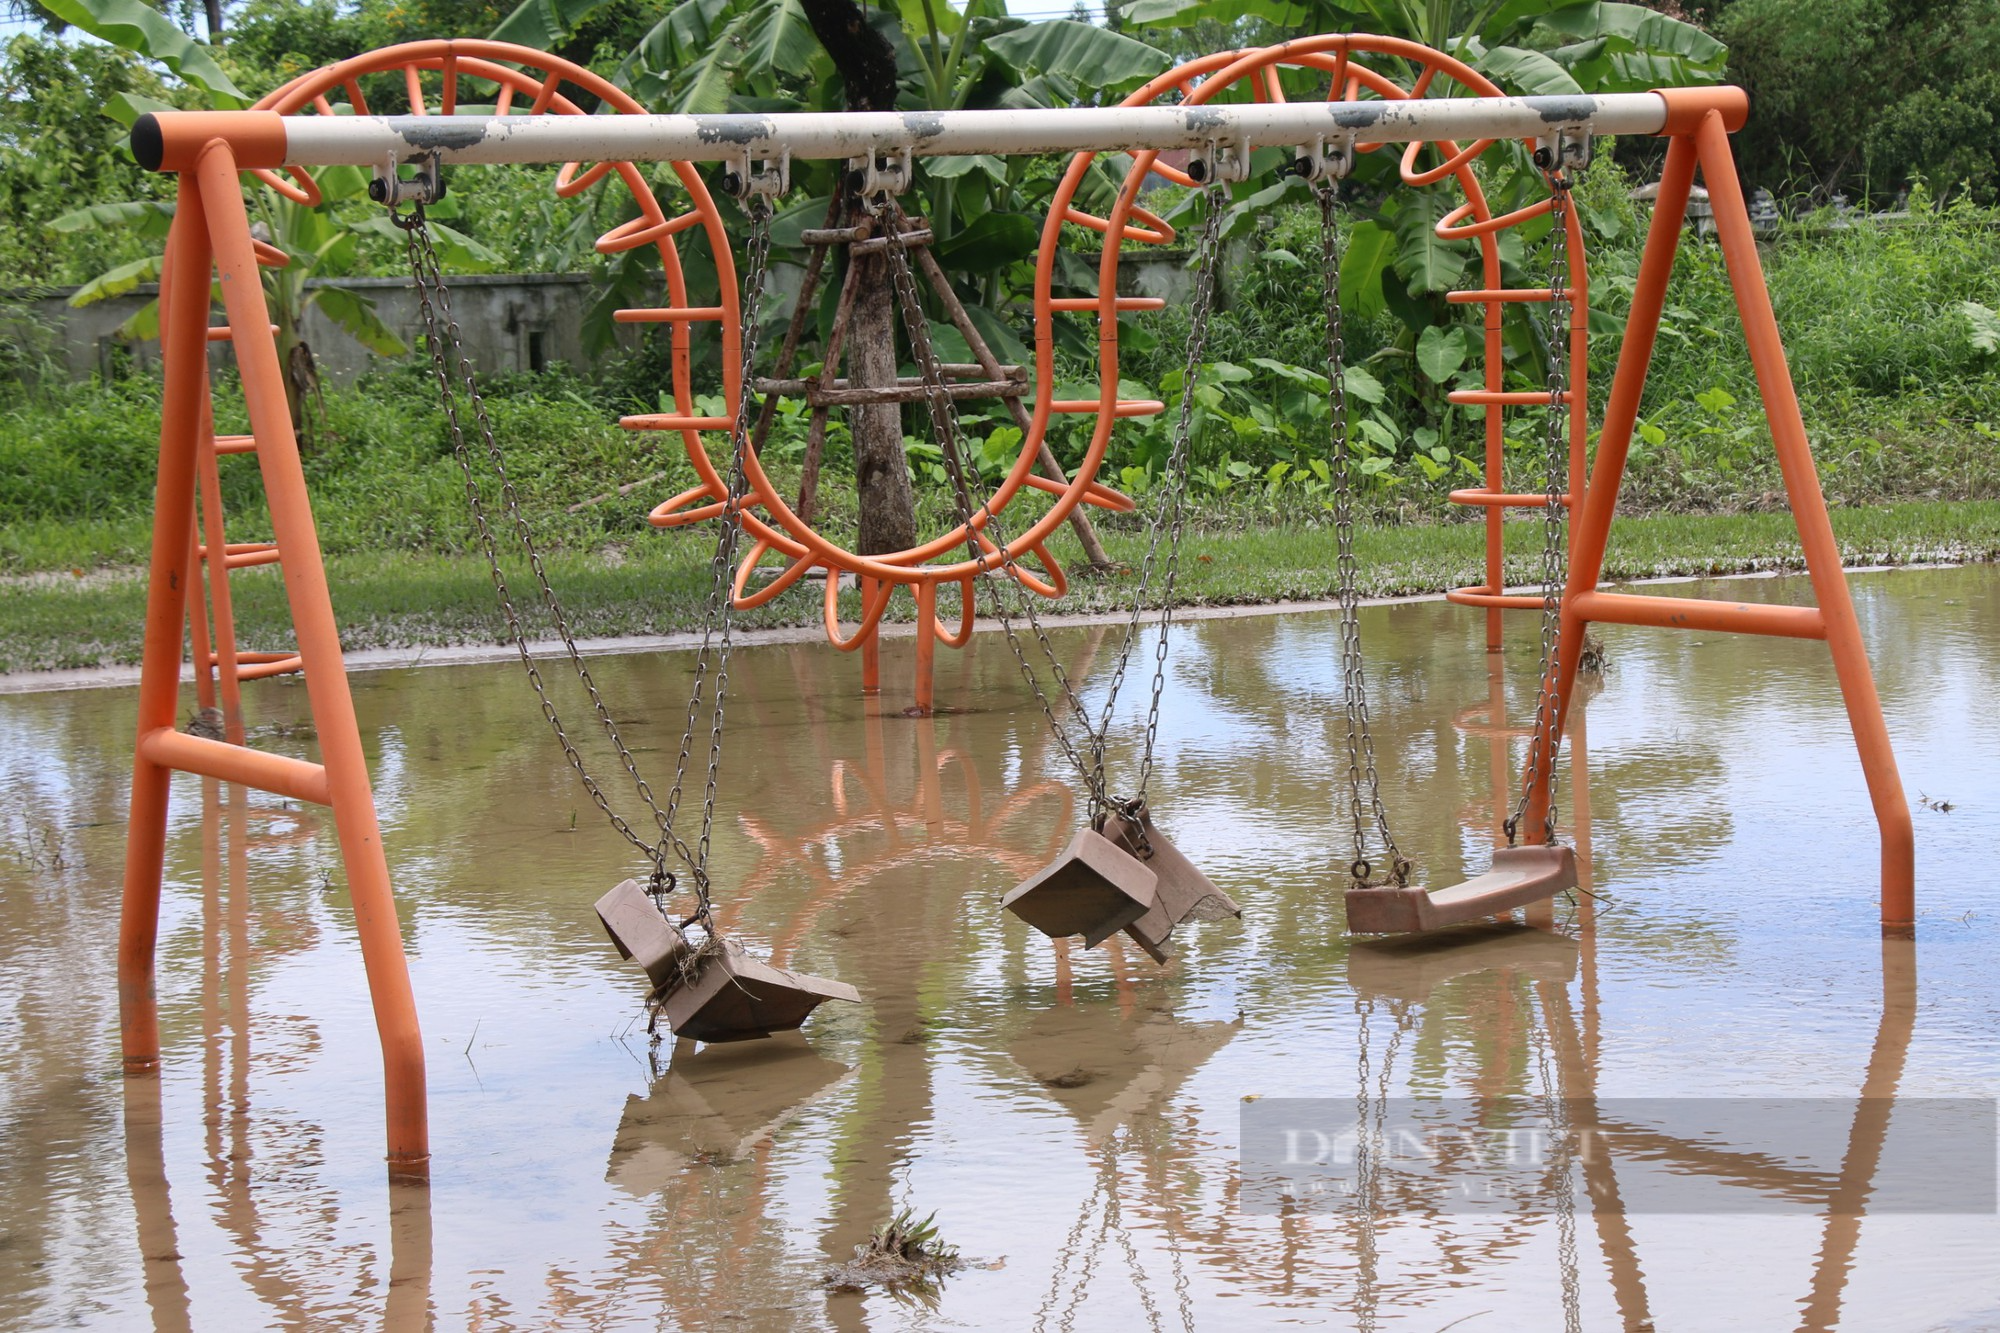 Nhà cửa, đường xá ngập ngụa bùn đất sau mưa lớn tại Đà Nẵng - Ảnh 2.